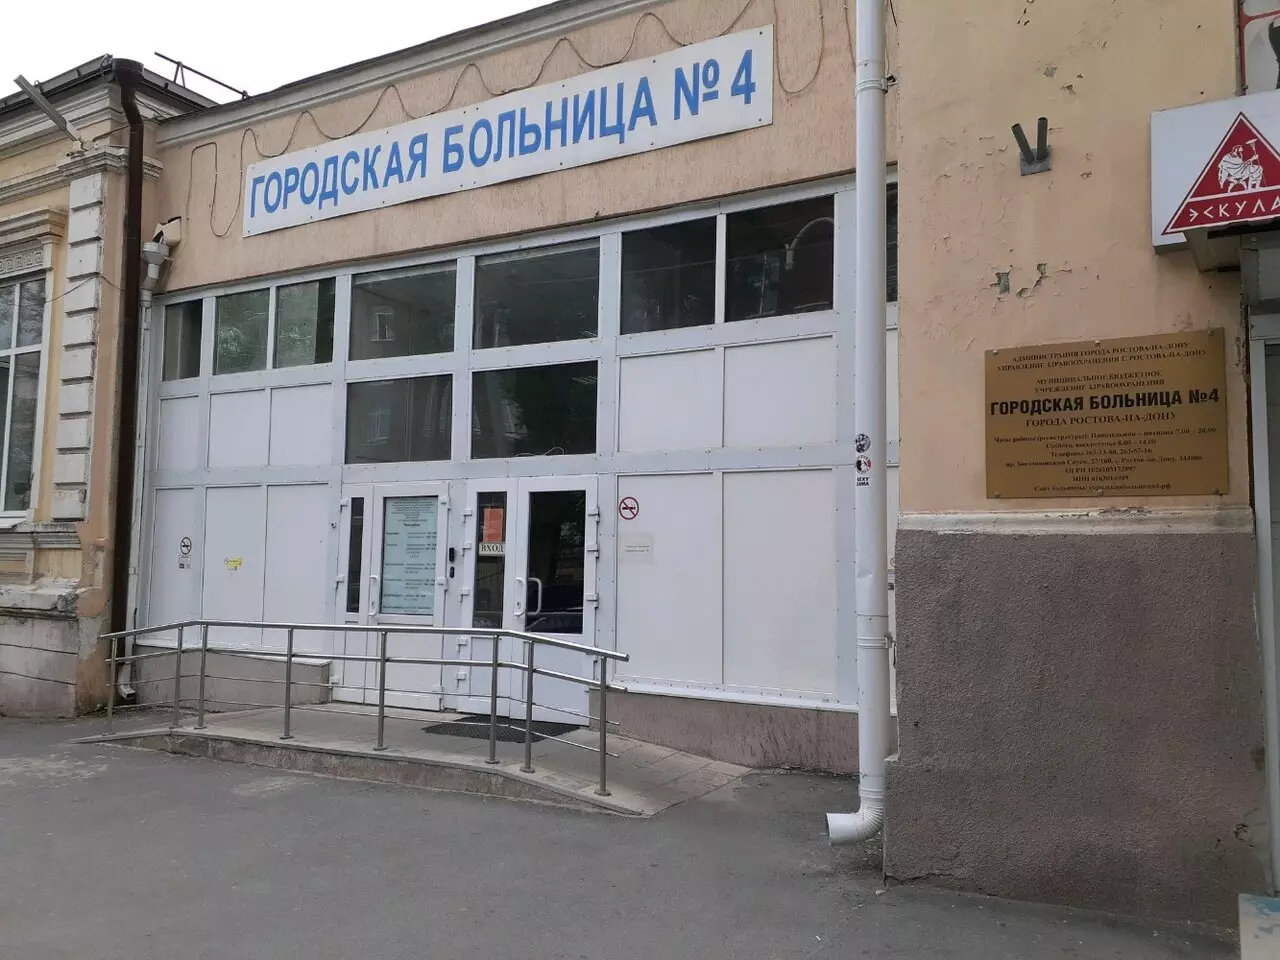 Горбольница №4 располагается в центре Ростова, на проспекте Богатяновский спуск, 27. В «Яндекс. Картах» медучреждение получило согласно отзывам оценку в 3,4 балла из пяти возможных.